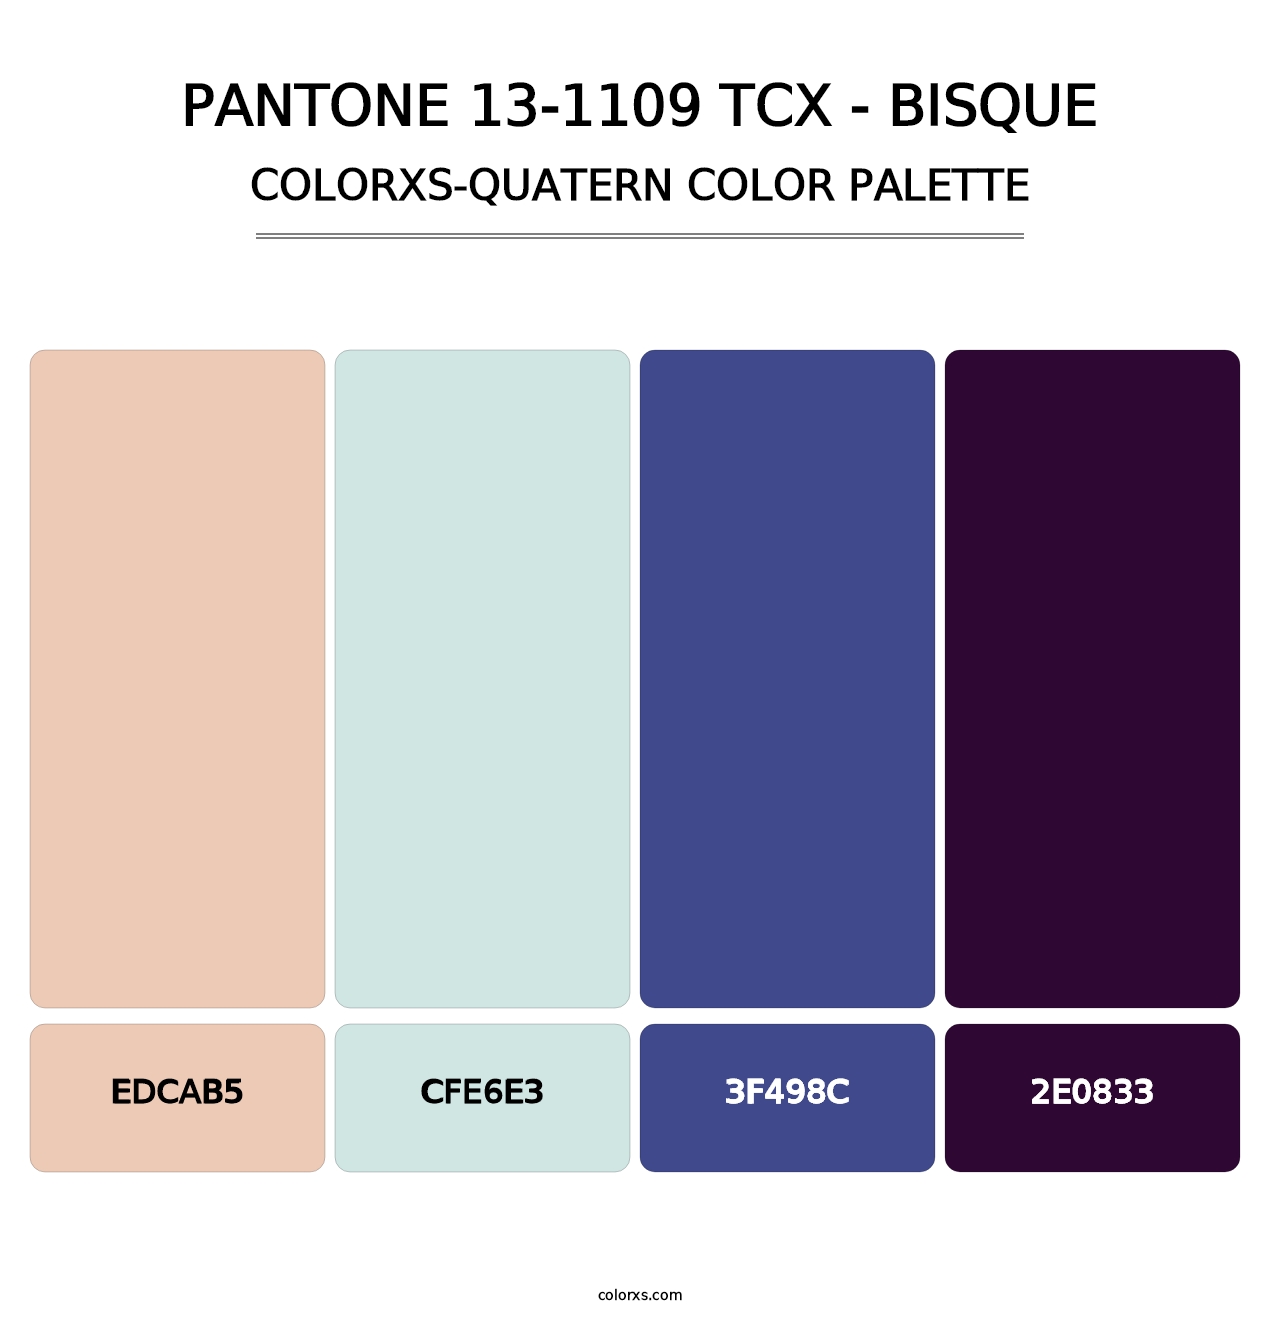 PANTONE 13-1109 TCX - Bisque - Colorxs Quatern Palette